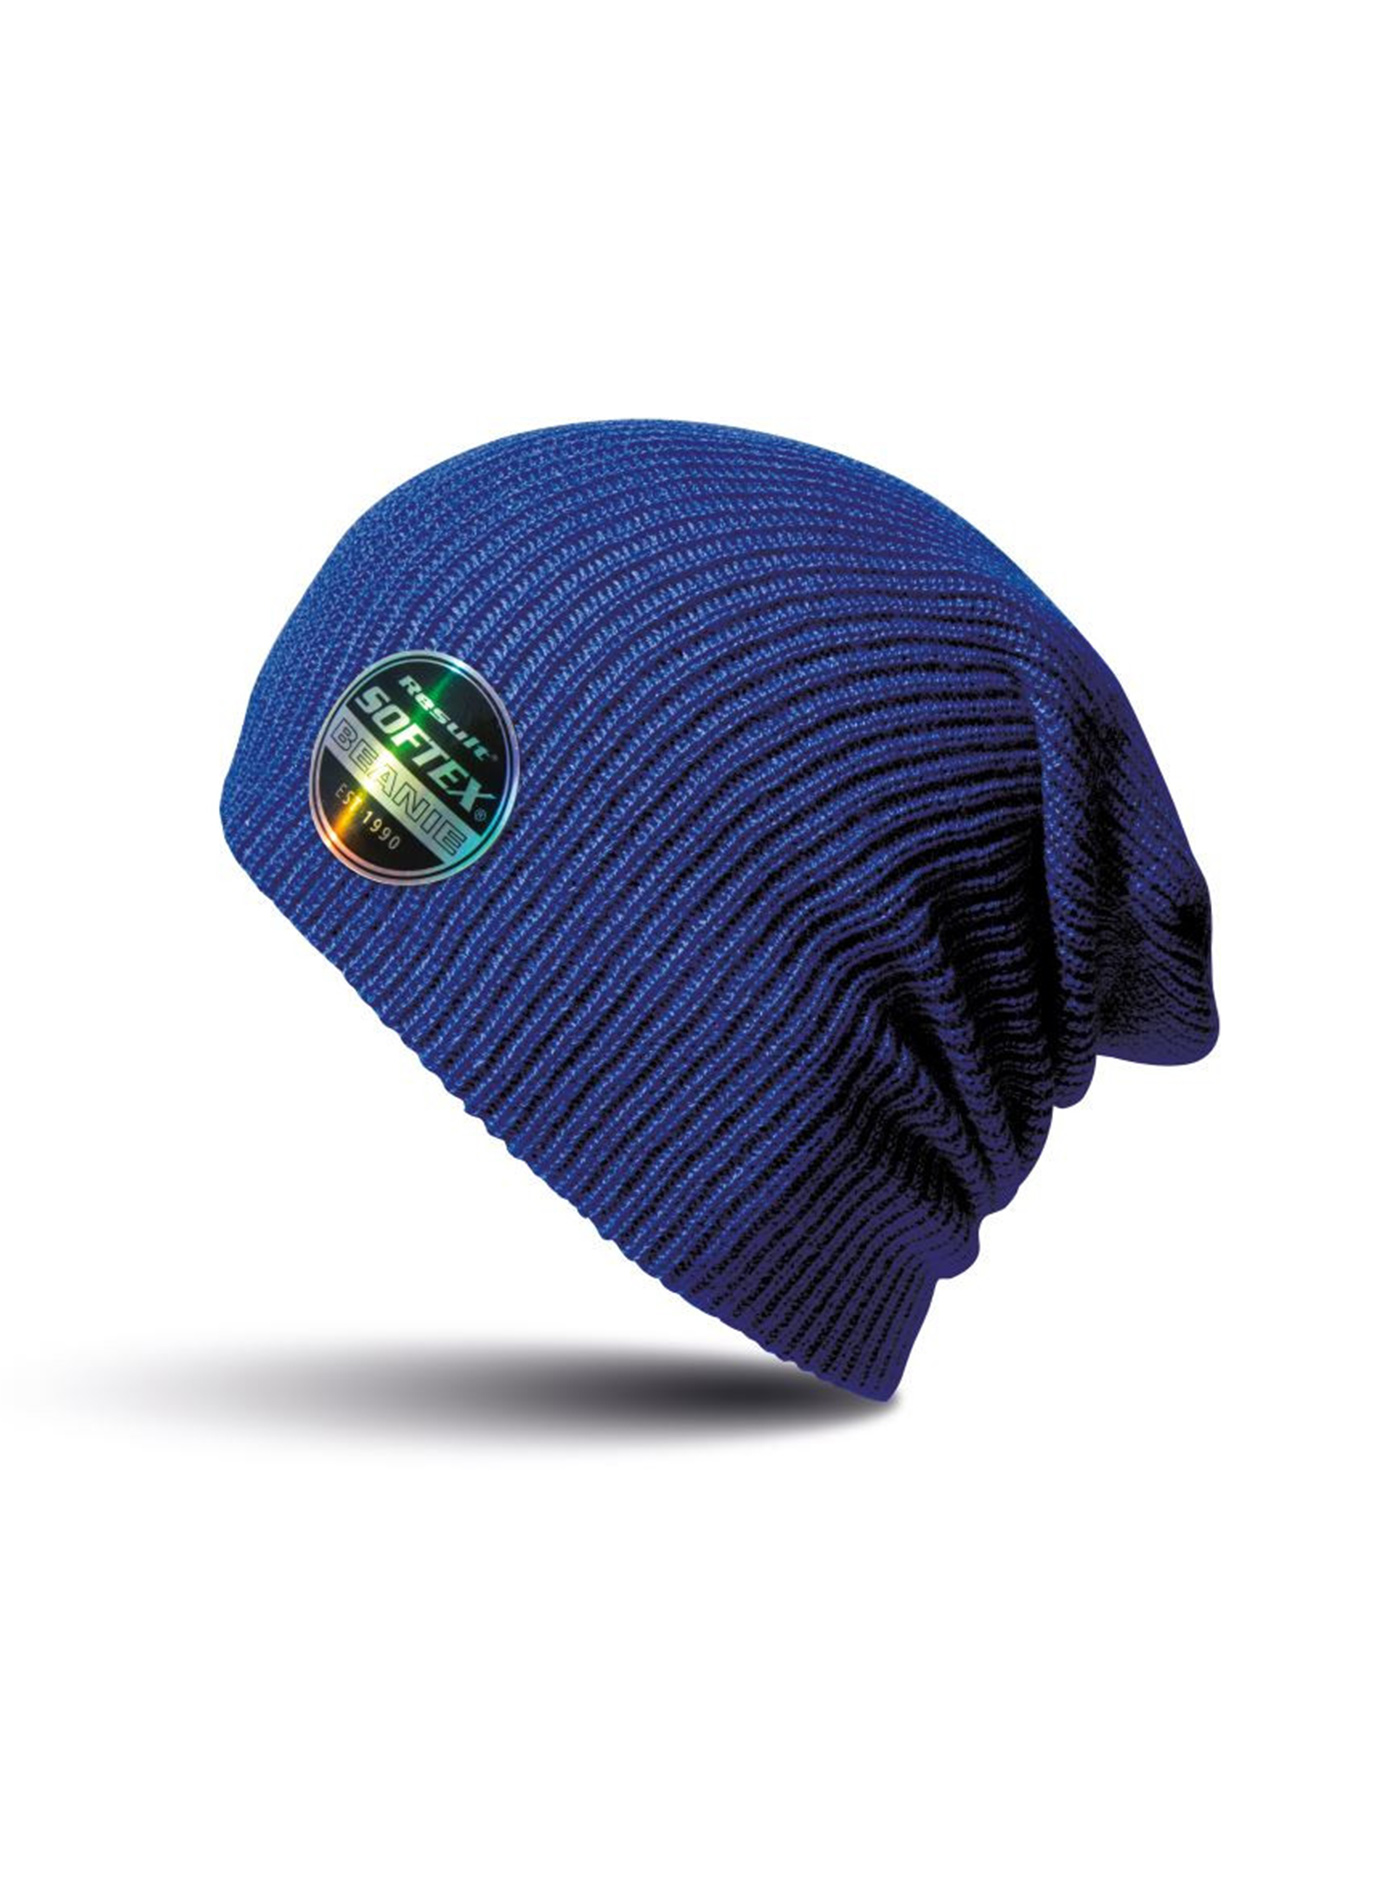 Čepice Result headwear softex beanie - Pacifická tmavě modrá univerzal